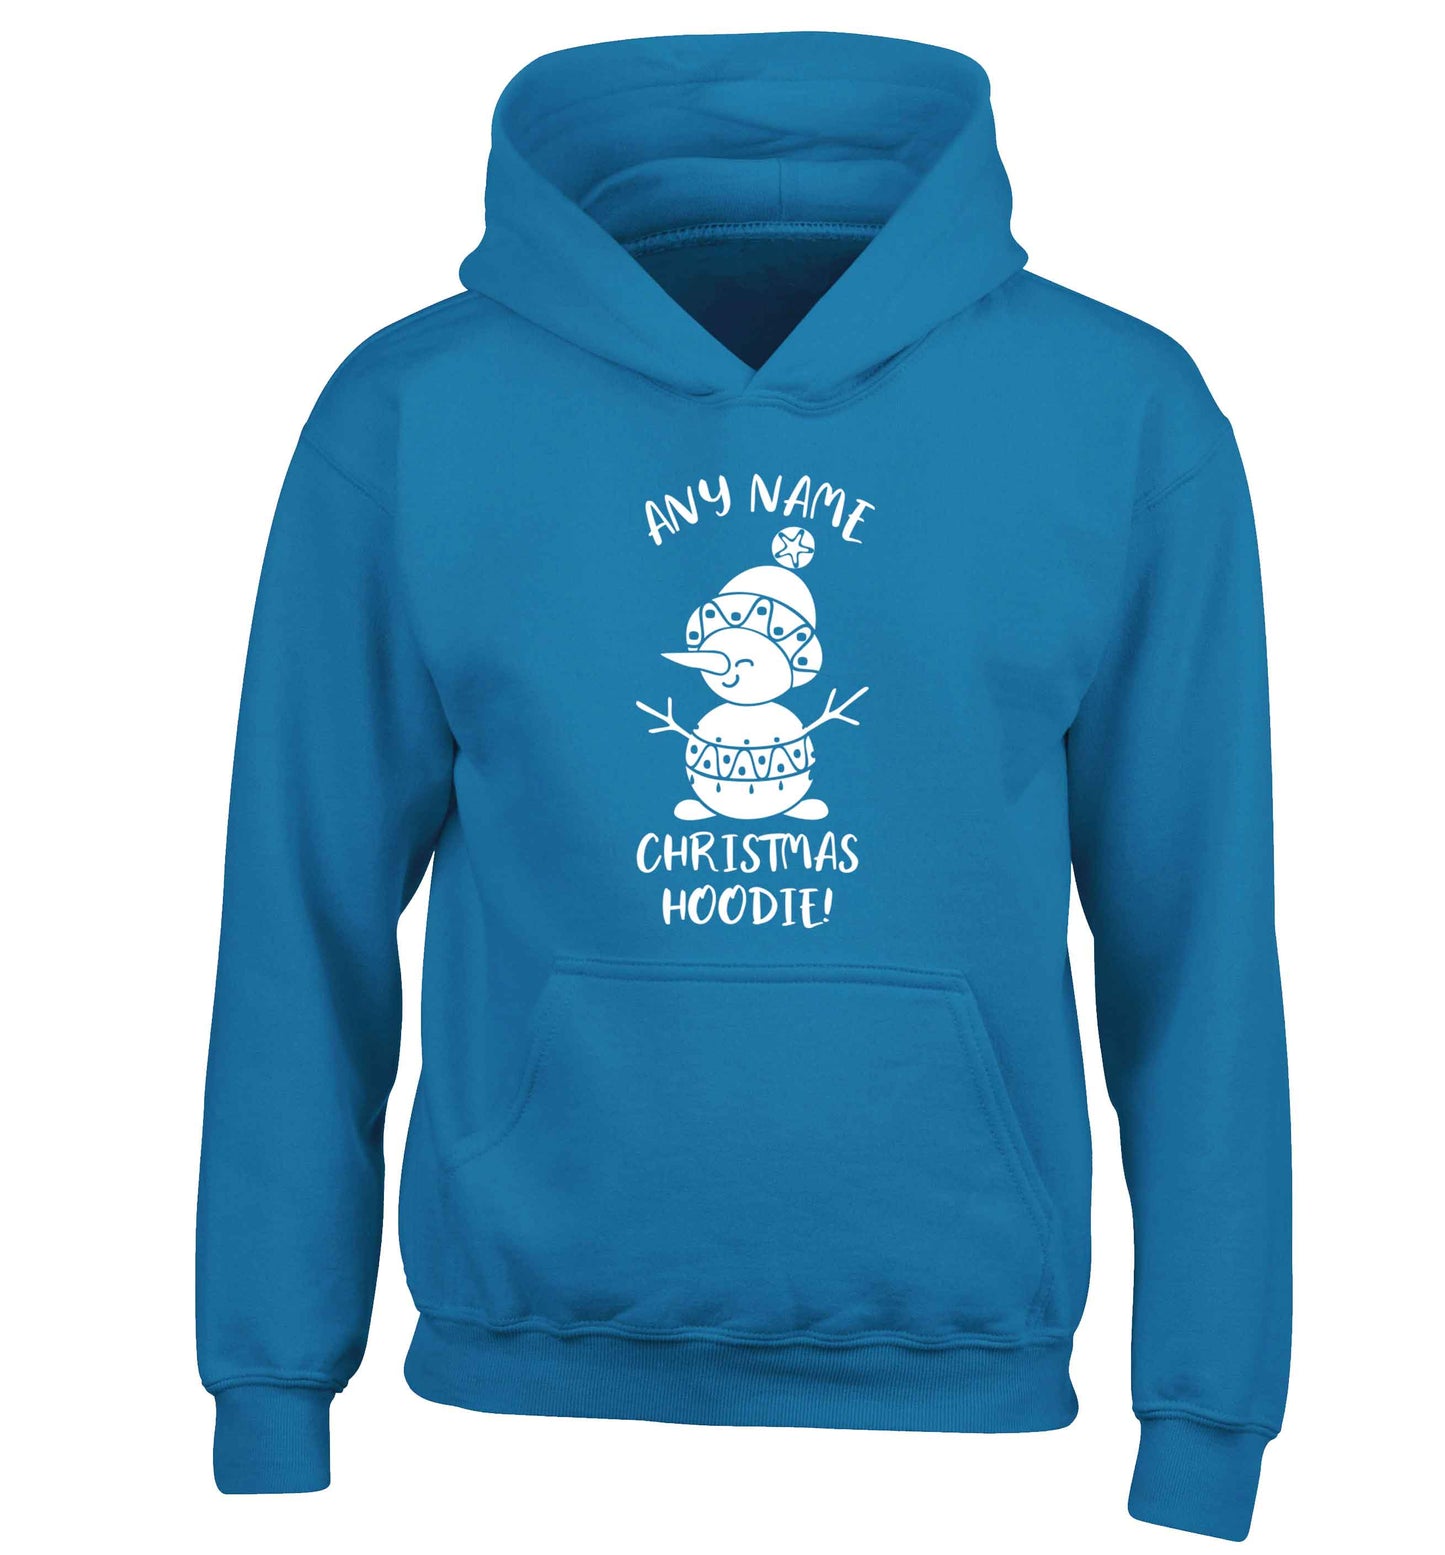 Personalised Christmas hoodie any name children's blue hoodie 12-13 Years